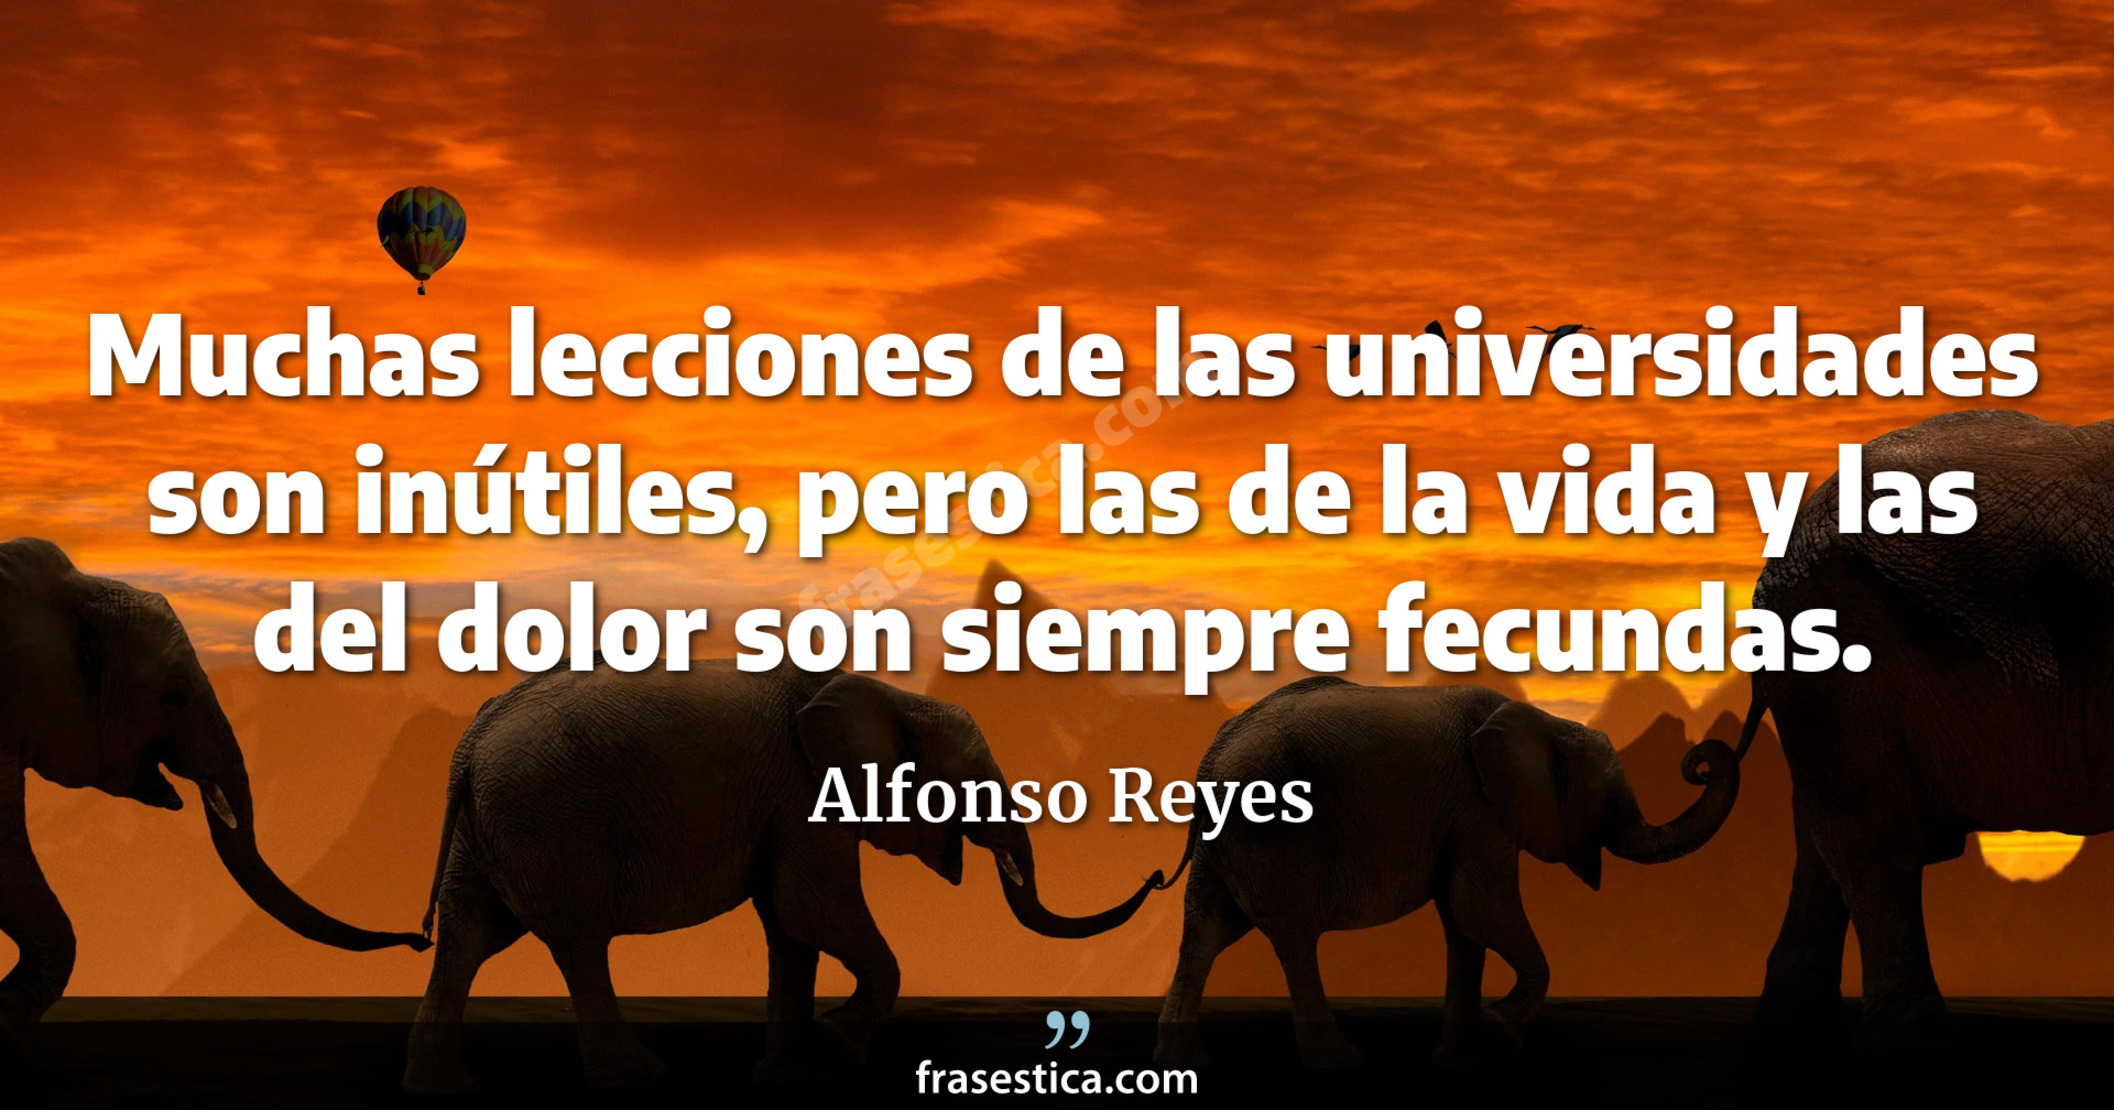 Muchas lecciones de las universidades son inútiles, pero las de la vida y las del dolor son siempre fecundas. - Alfonso Reyes